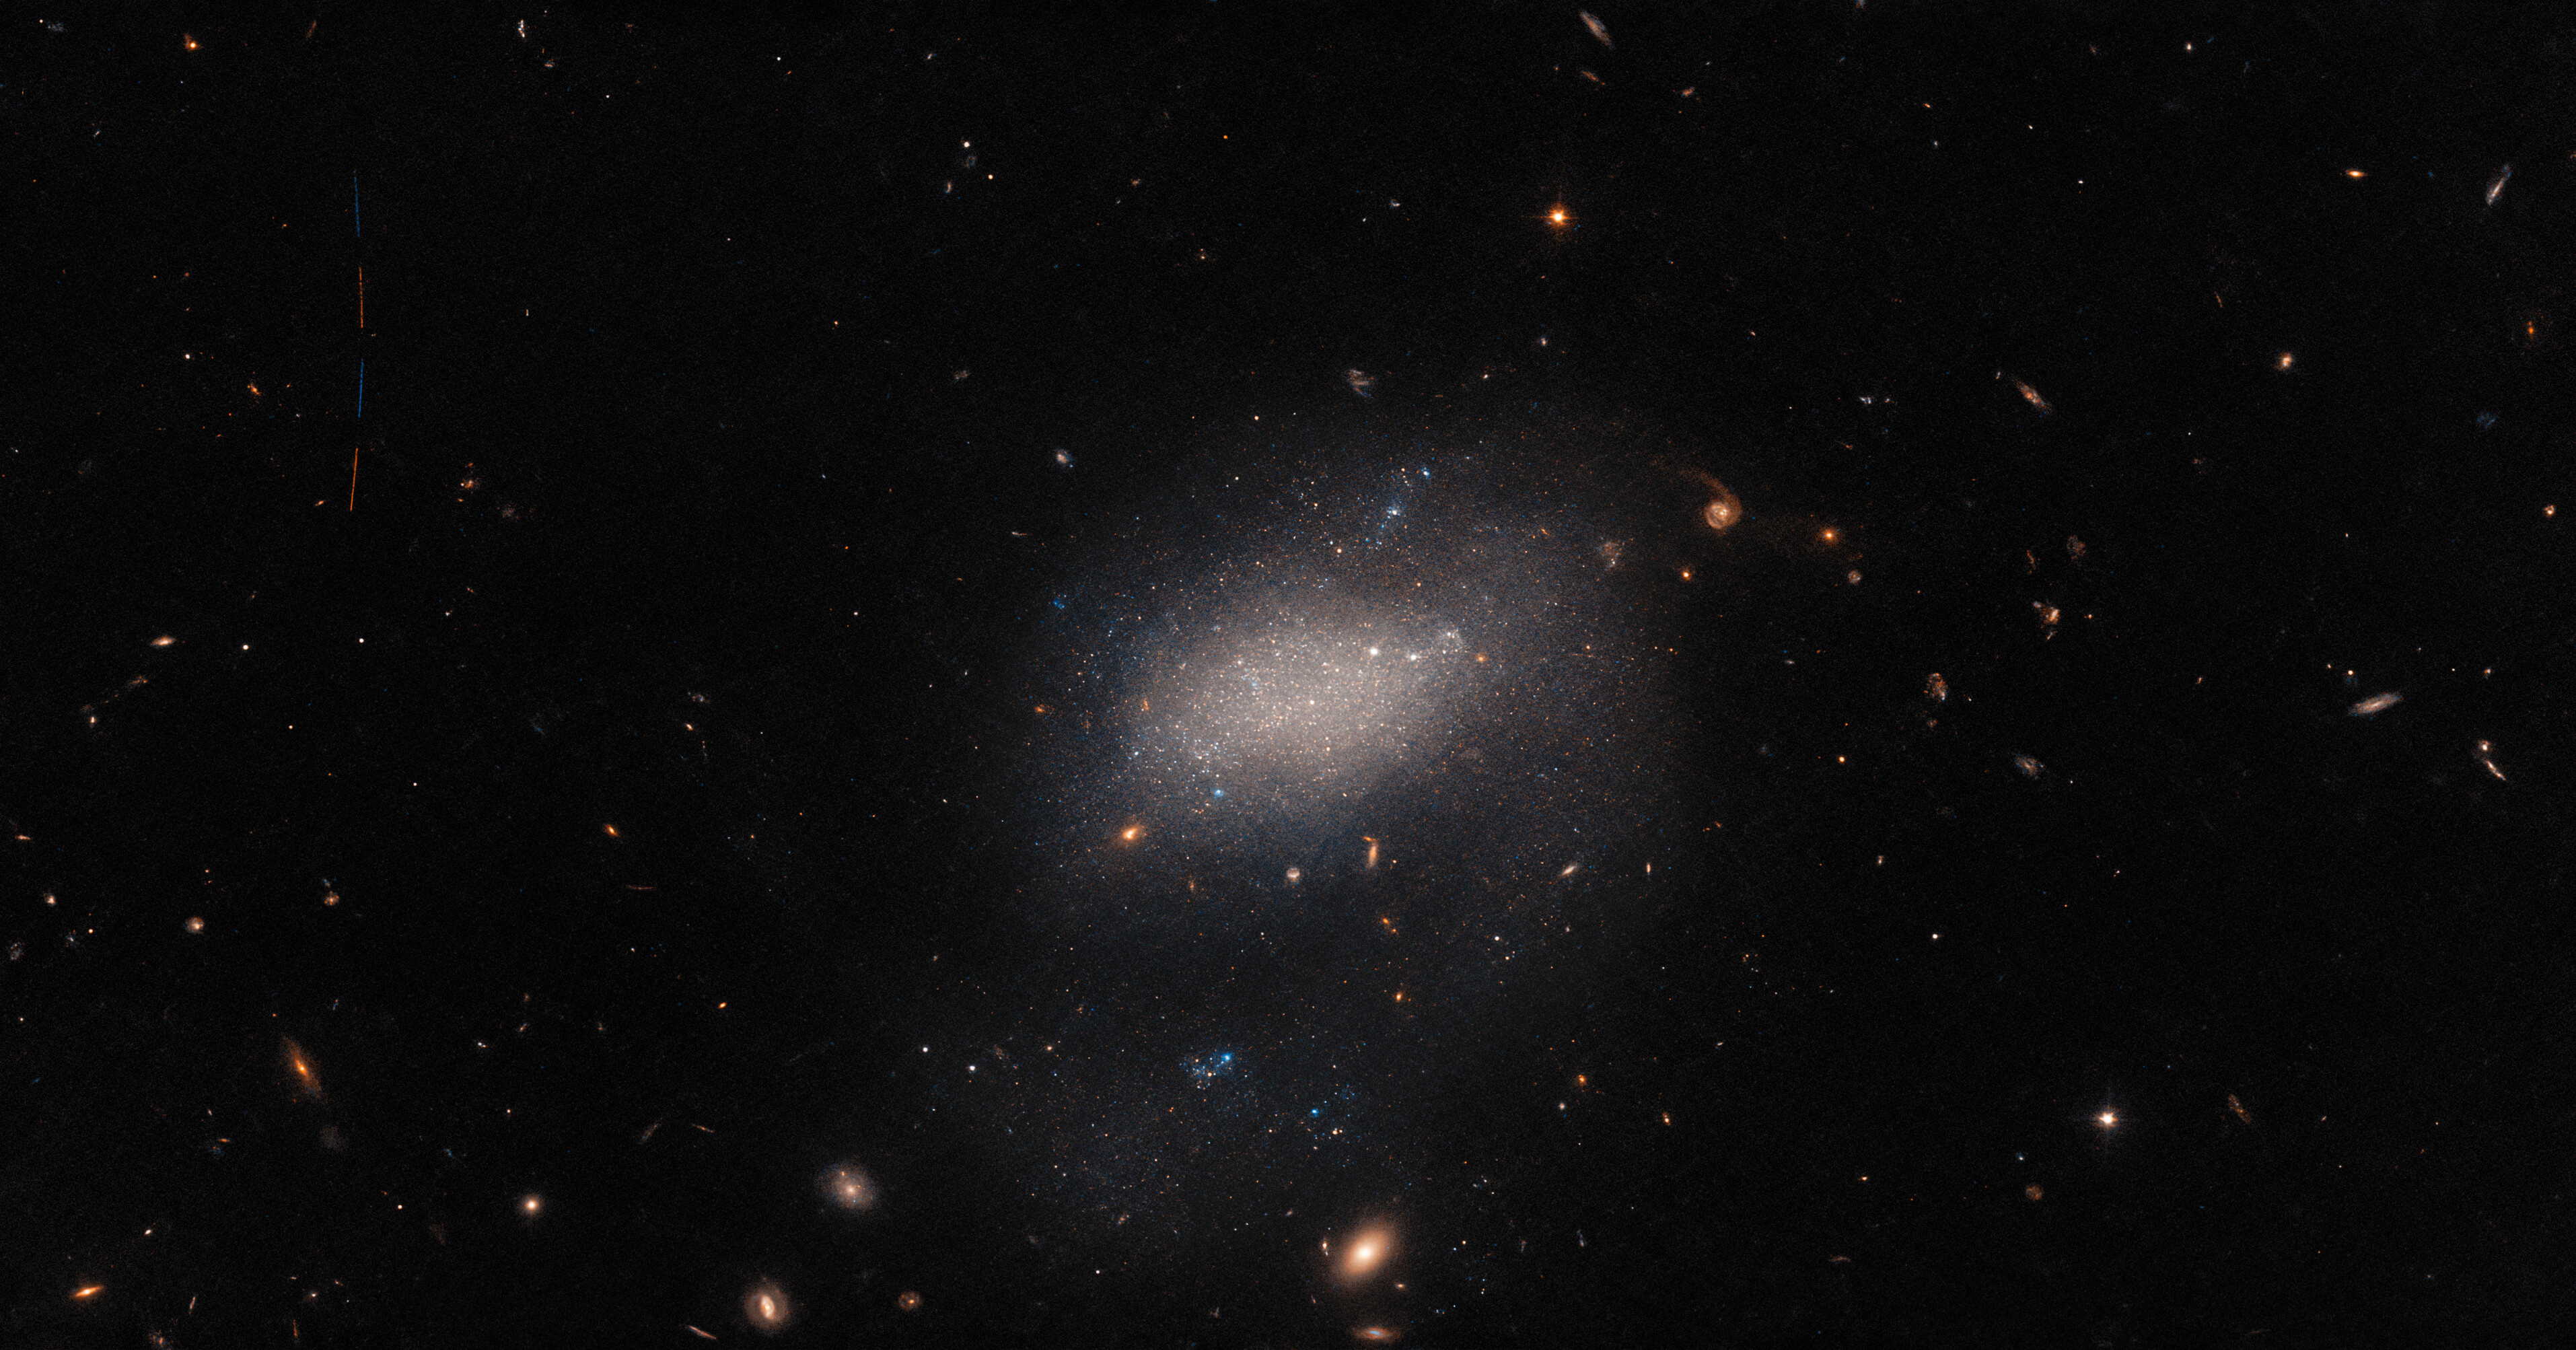 Ціль телескопа&amp;nbsp;— галактика&amp;nbsp;UGC 7983&amp;nbsp;— знаходиться у центрі світлини. Проліт астероїда ж можна роздивитися у лівому верхньому куті.&amp;nbsp;ESA / Hubble &amp;amp; NASA, R. Tully